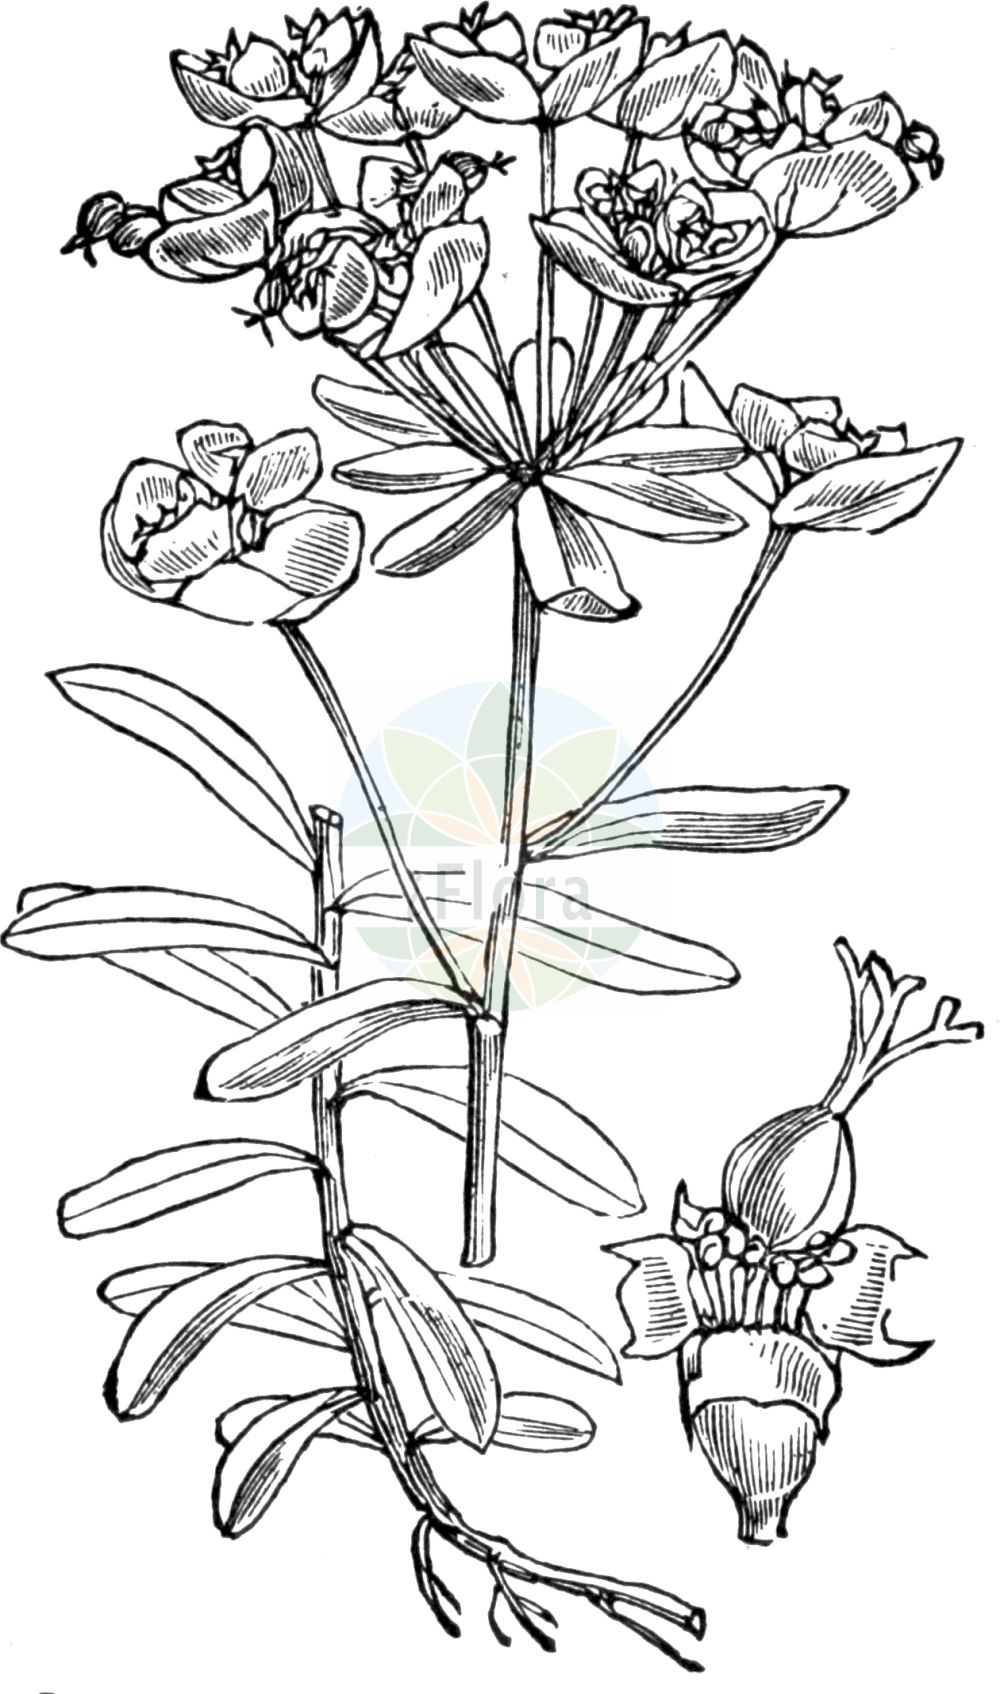 Historische Abbildung von Euphorbia esula (Esels-Wolfsmilch - Leafy Spurge). Das Bild zeigt Blatt, Bluete, Frucht und Same. ---- Historical Drawing of Euphorbia esula (Esels-Wolfsmilch - Leafy Spurge). The image is showing leaf, flower, fruit and seed.(Euphorbia esula,Esels-Wolfsmilch,Leafy Spurge,Euphorbia esula,Euphorbion esulum,Keraselma esula,Tithymalus esula,Esels-Wolfsmilch,Scharfe Wolfsmilch,Leafy Spurge,Euphorbia,Wolfsmilch,Spurge,Euphorbiaceae,Wolfsmilchgewächse,Spurge family,Blatt,Bluete,Frucht,Same,leaf,flower,fruit,seed,Fitch et al. (1880))